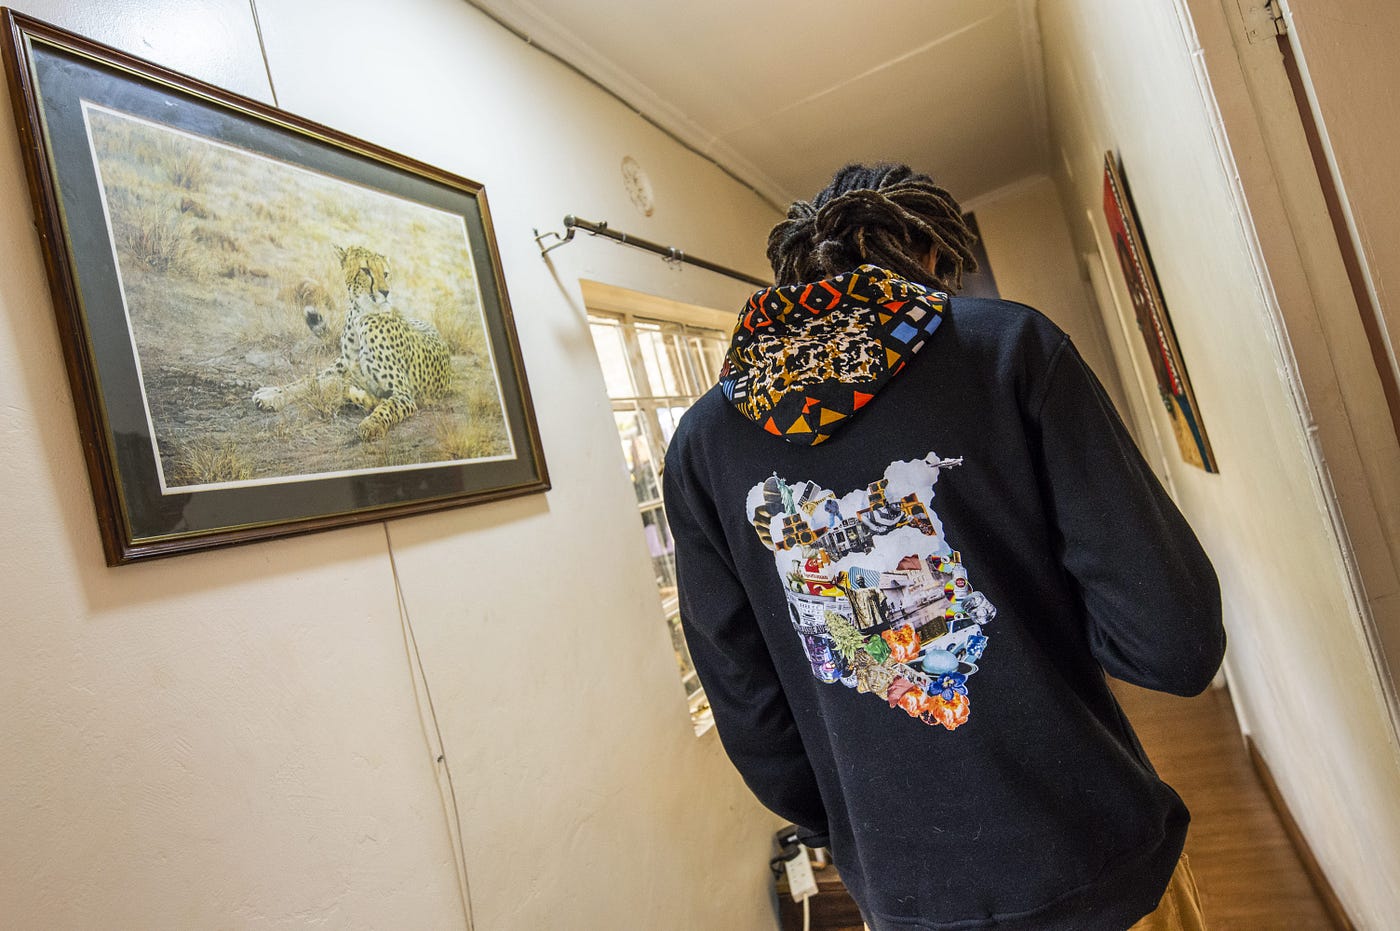 Blocka Beats displays the ‘Nairobi Yetu’ artwork on the back of his branded hoodie.